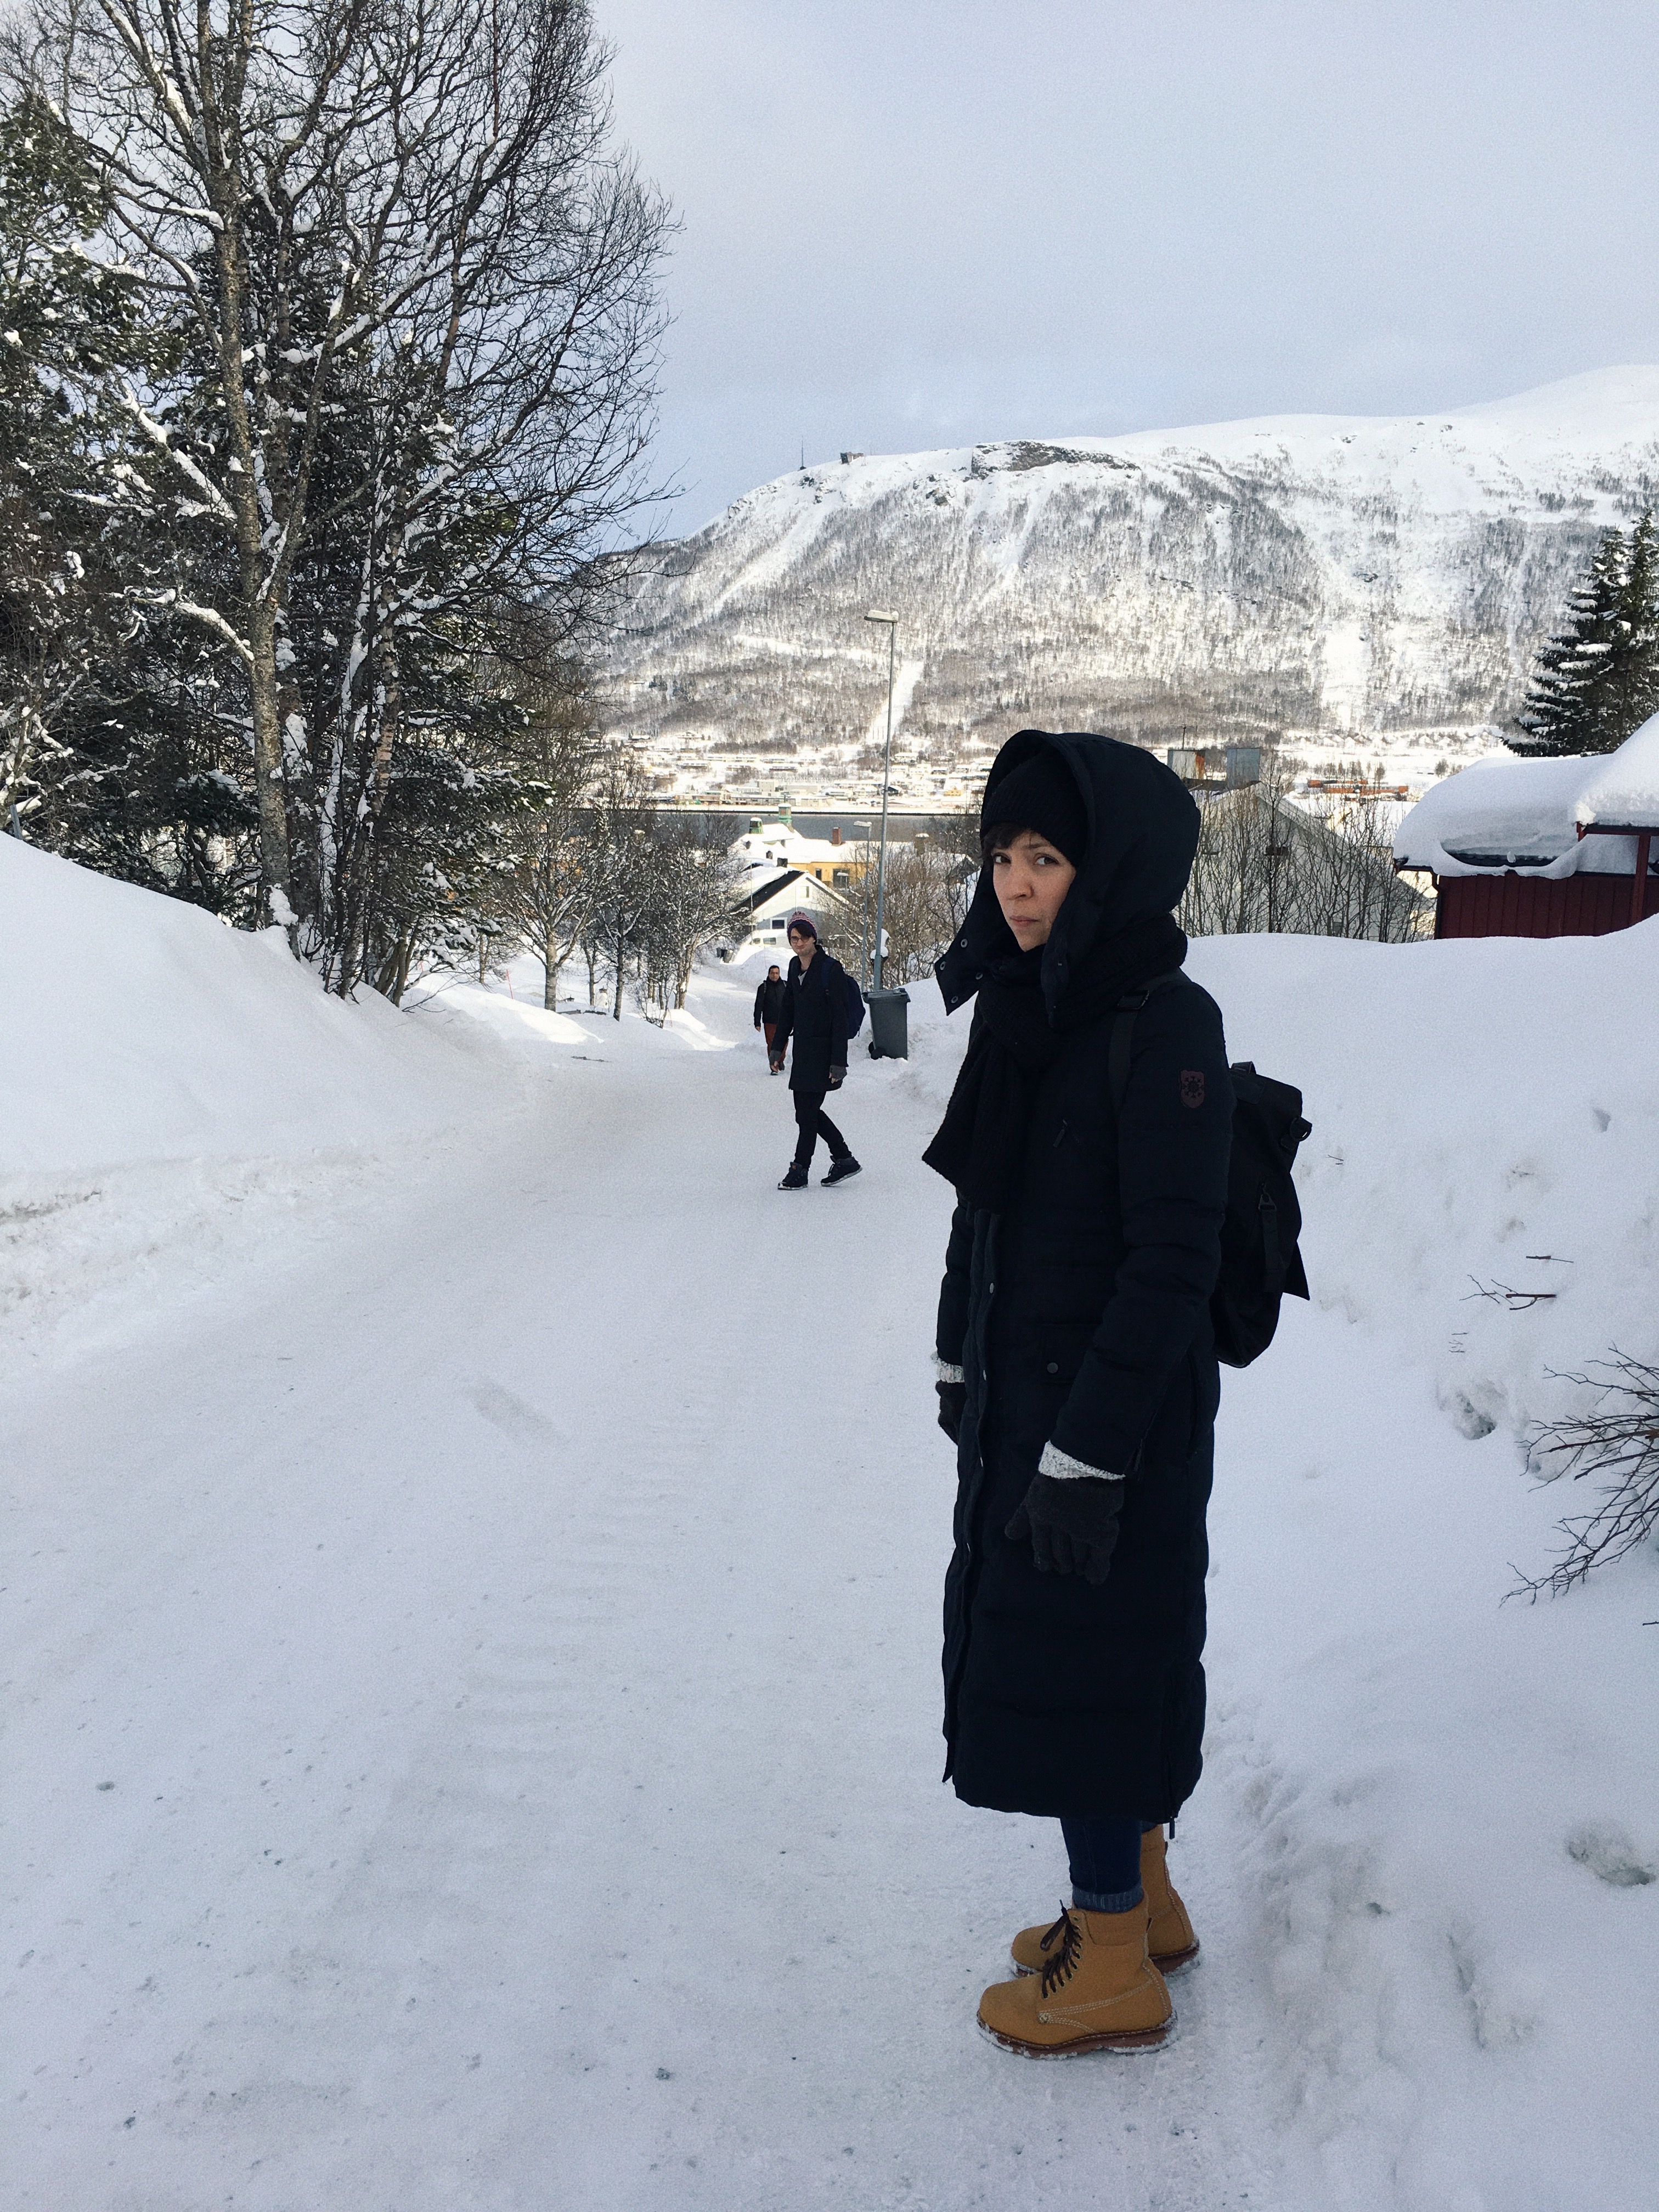 Prawdopodobnie właśnie w Tromso znajduje się najbardziej śliski chodnik świata.